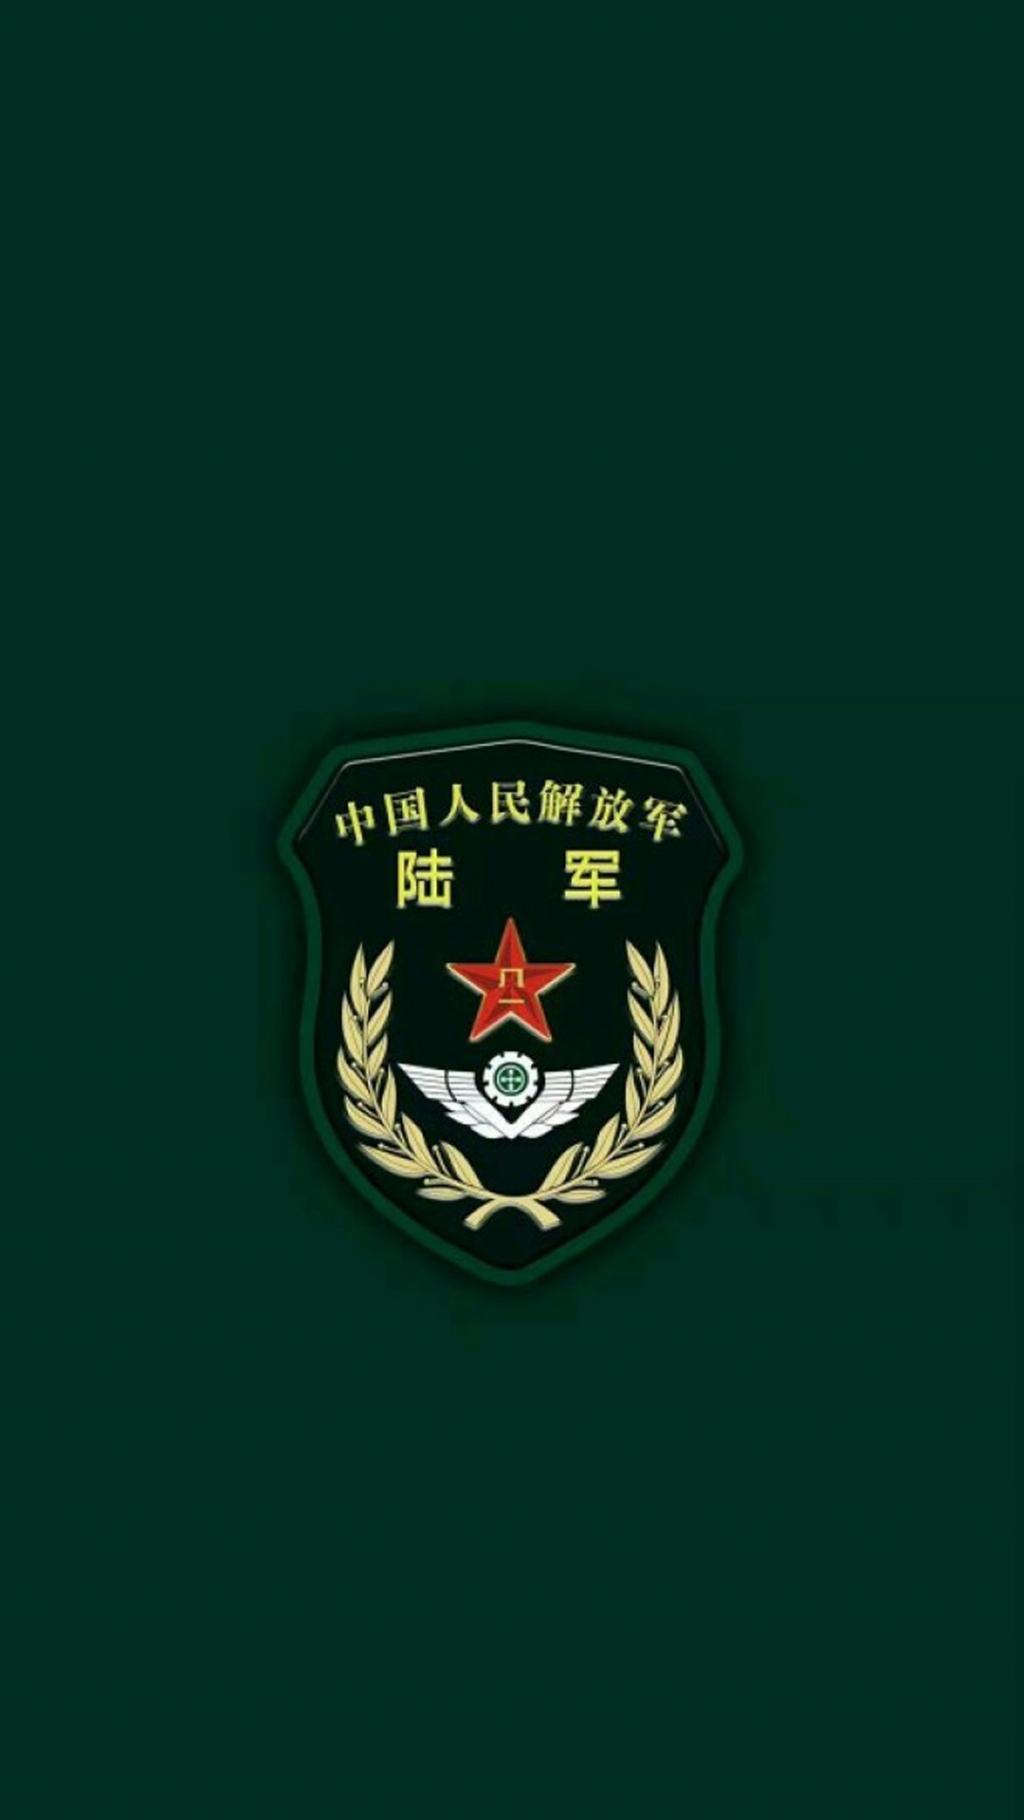 中国人民解放军陆军徽章手机壁纸